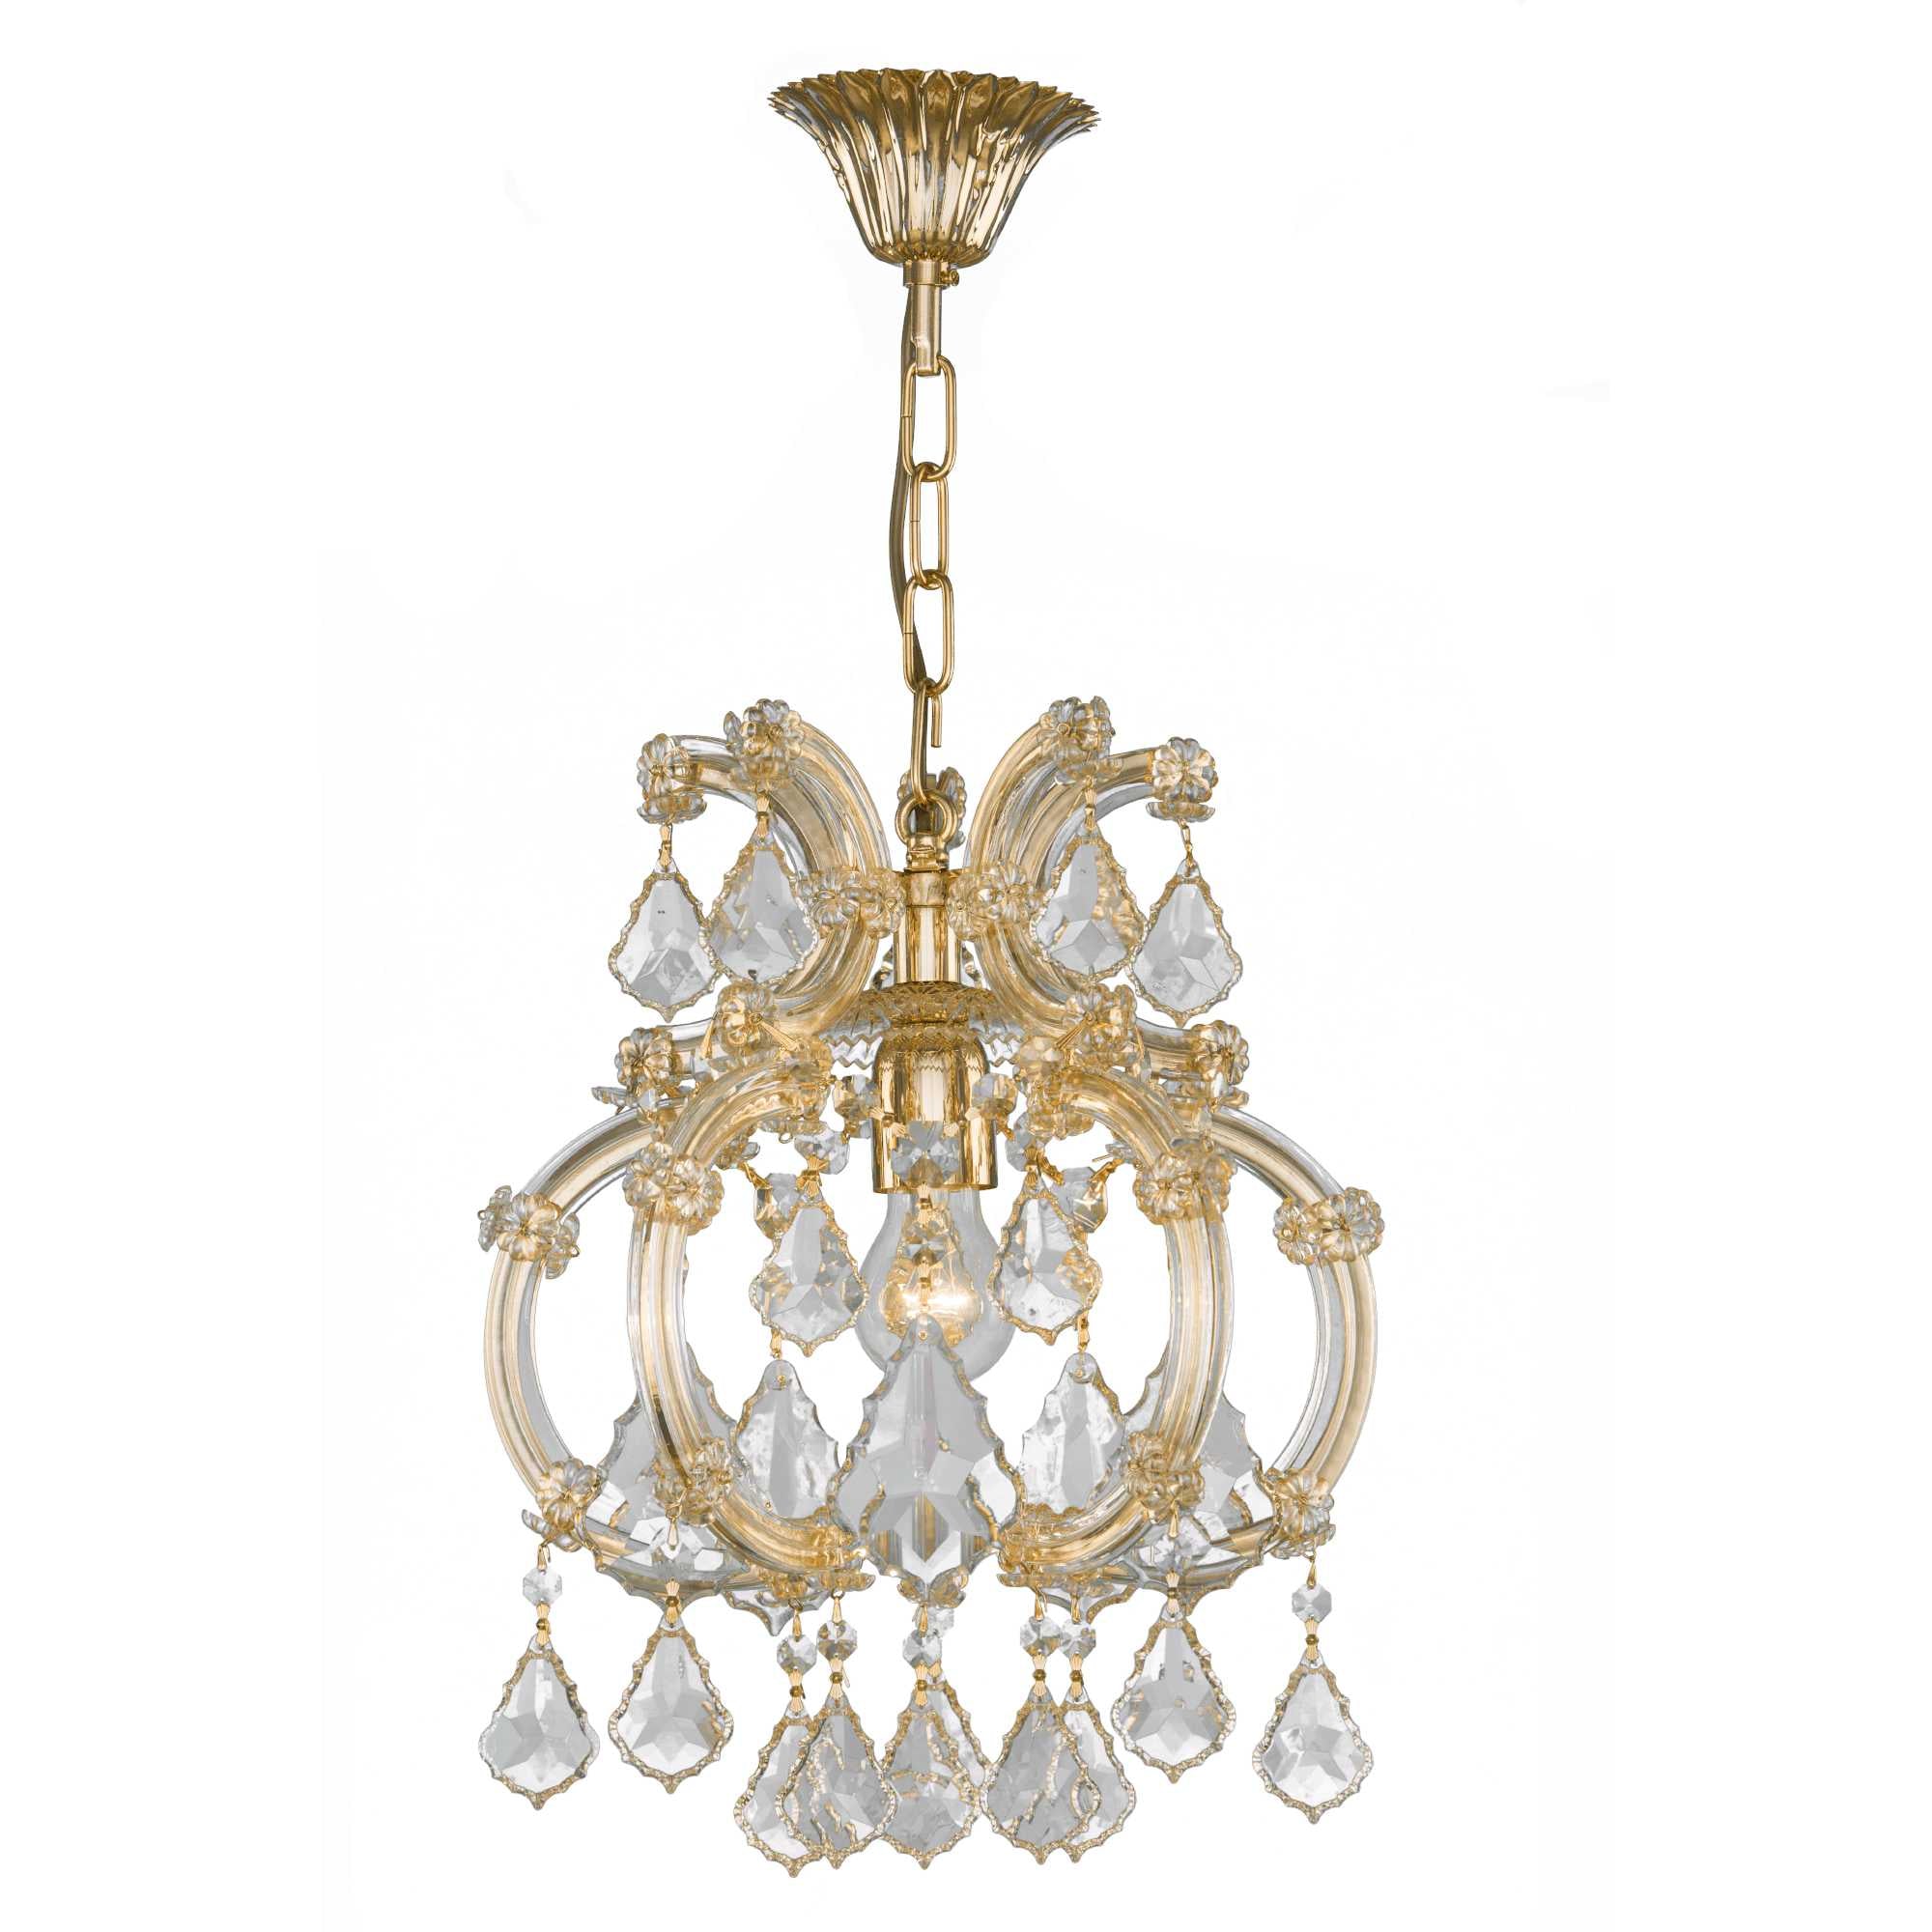 Asfour-Crystal-Lighting-Maria-Theresa-Collection-Maria-Theresa-Pendant-Light-5-Bulbs-Gold